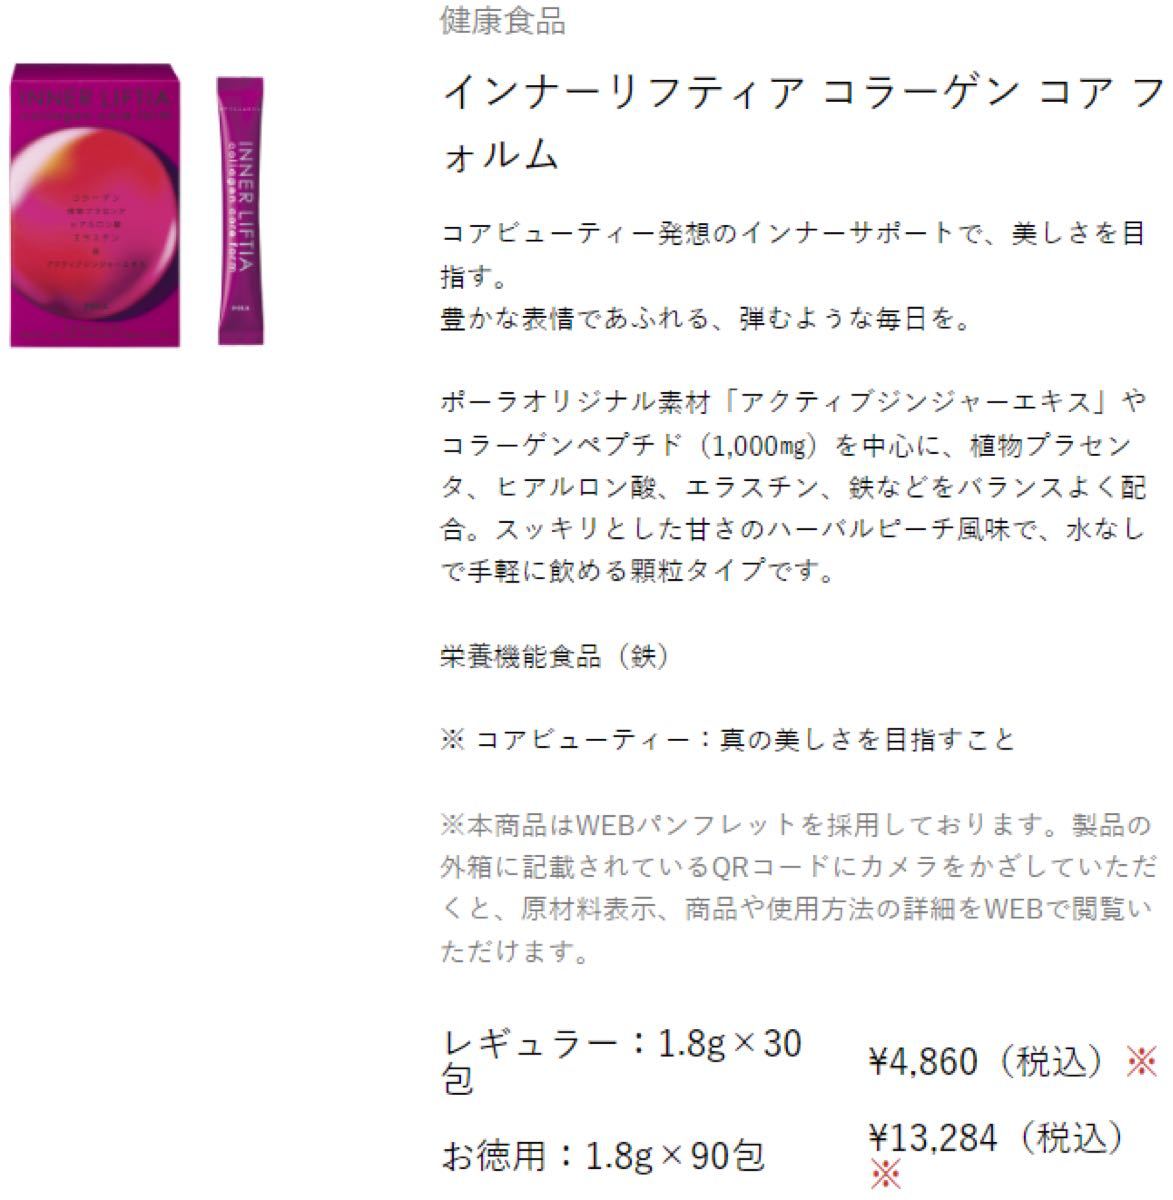 8128円 【誠実】 POLA ポーラ インナーリフティア コラーゲン コア フォルム お徳用 90包